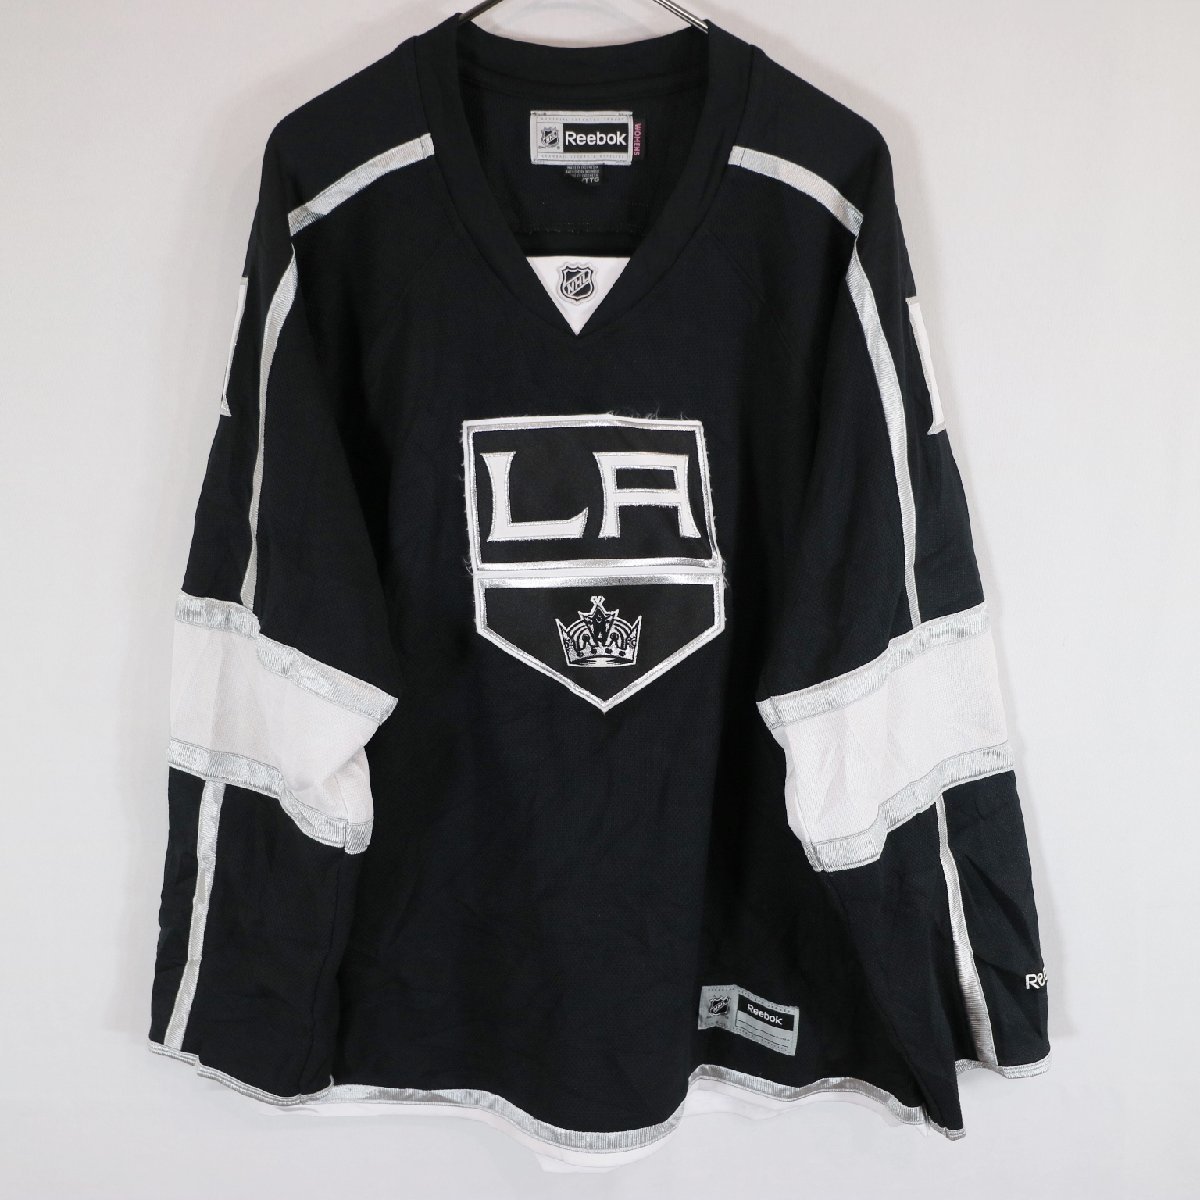 人気商品の ( ブラック ホッケー プロチーム NHL ゲームシャツ ロサンゼルス・キングス リーボック Reebok レディース N3753 古着 中古 ) XXL アイスホッケー